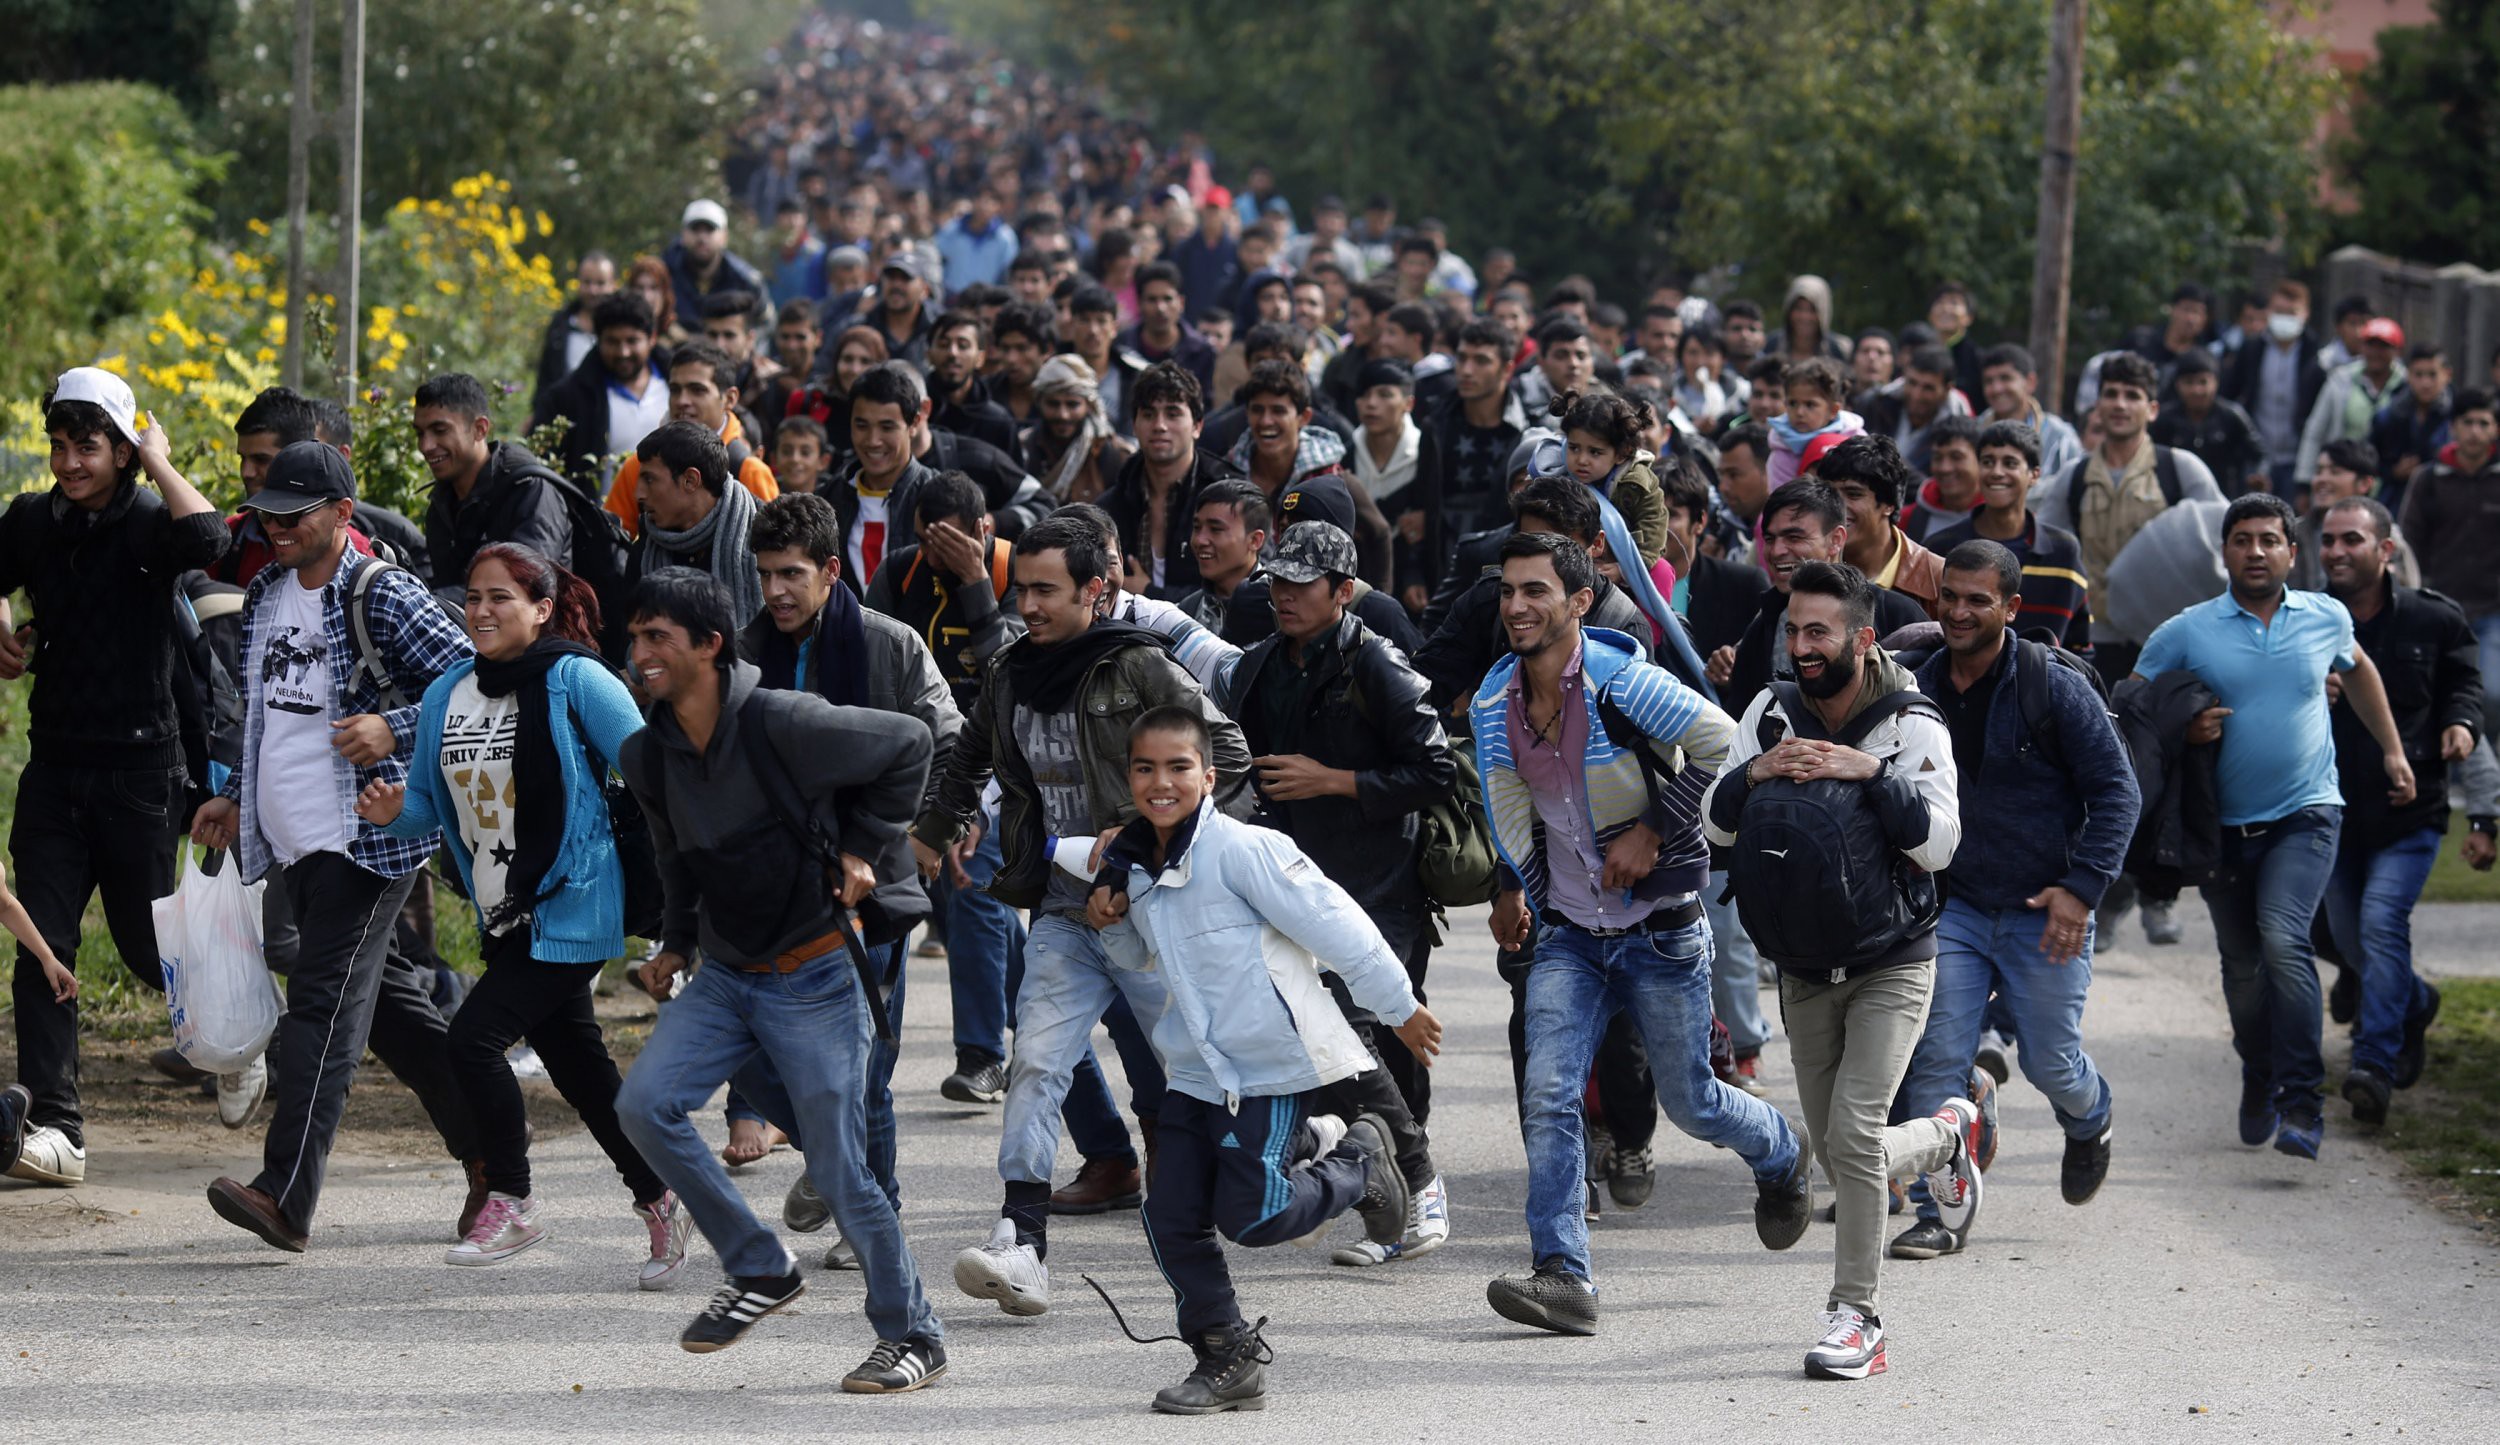 Толпа голодных мужиков. Толпа мигрантов. Мигранты в Европе. Толпа беженцев. Толпа бежит.